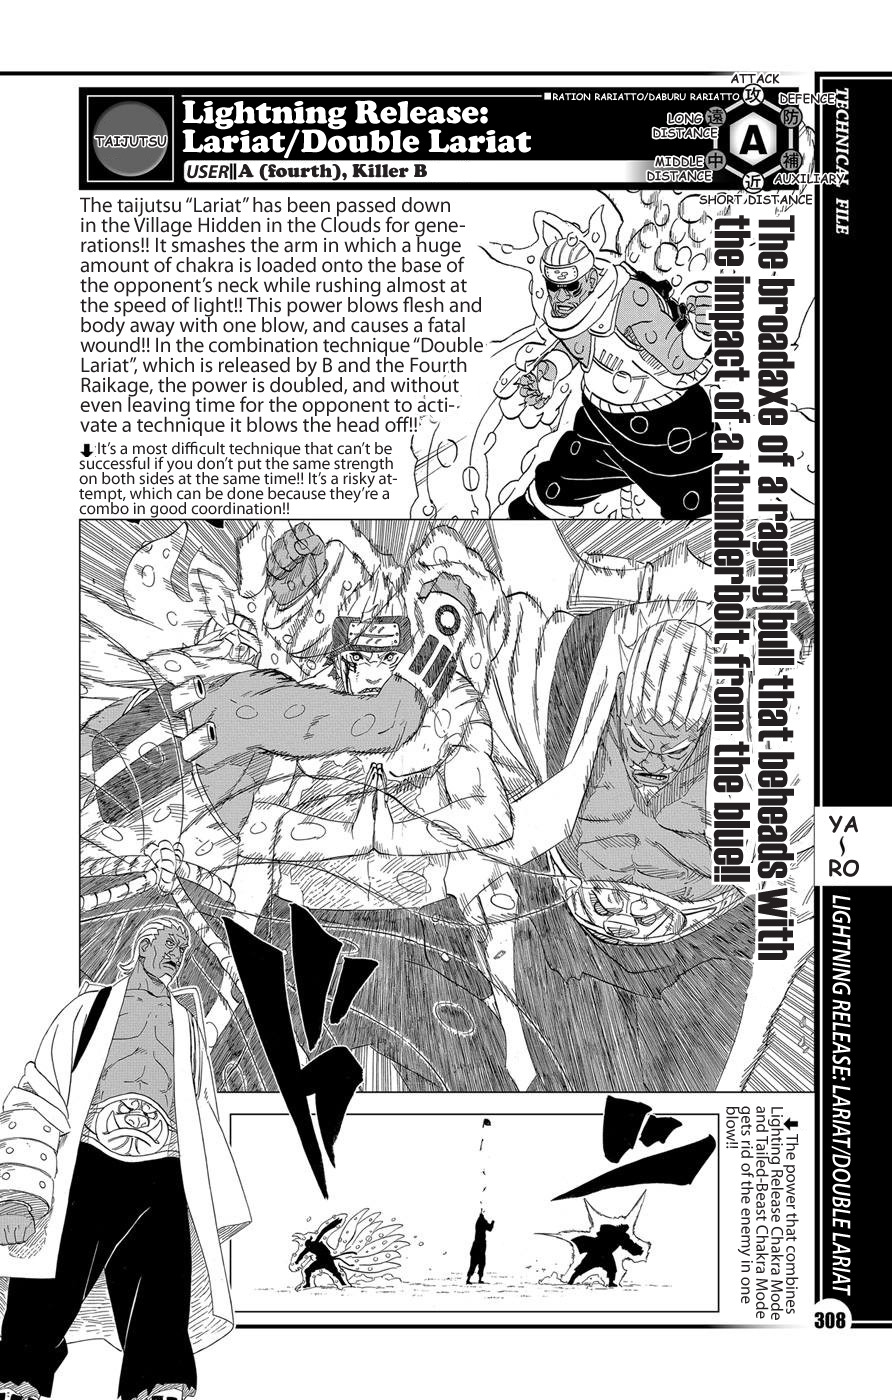 3-Hinata - Qual kunoichi tem o melhor taijutsu do mangá? RE: Tsunade - Página 2 Tumblr_p6rw84fiMR1urljpmo1_1280